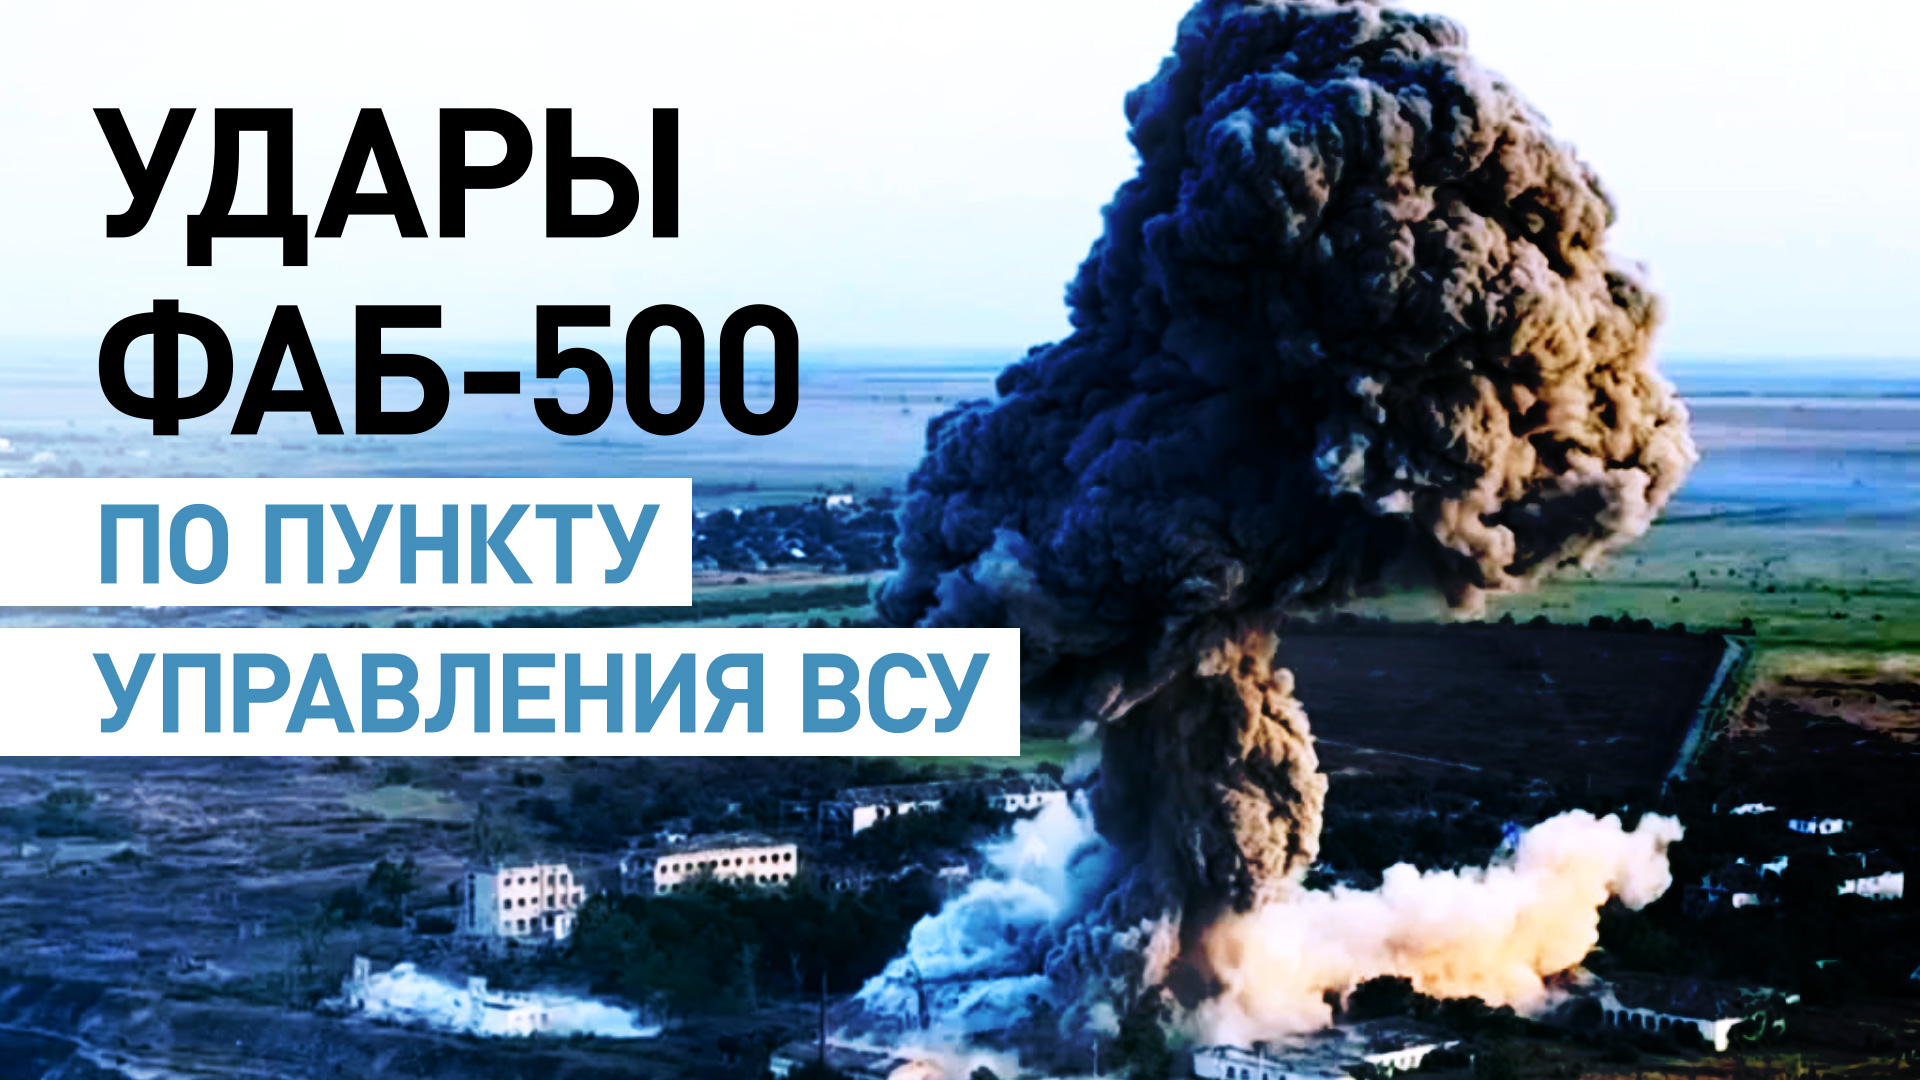 Российские военные ударили ФАБ-500 по украинскому пункту управления под Херсоном